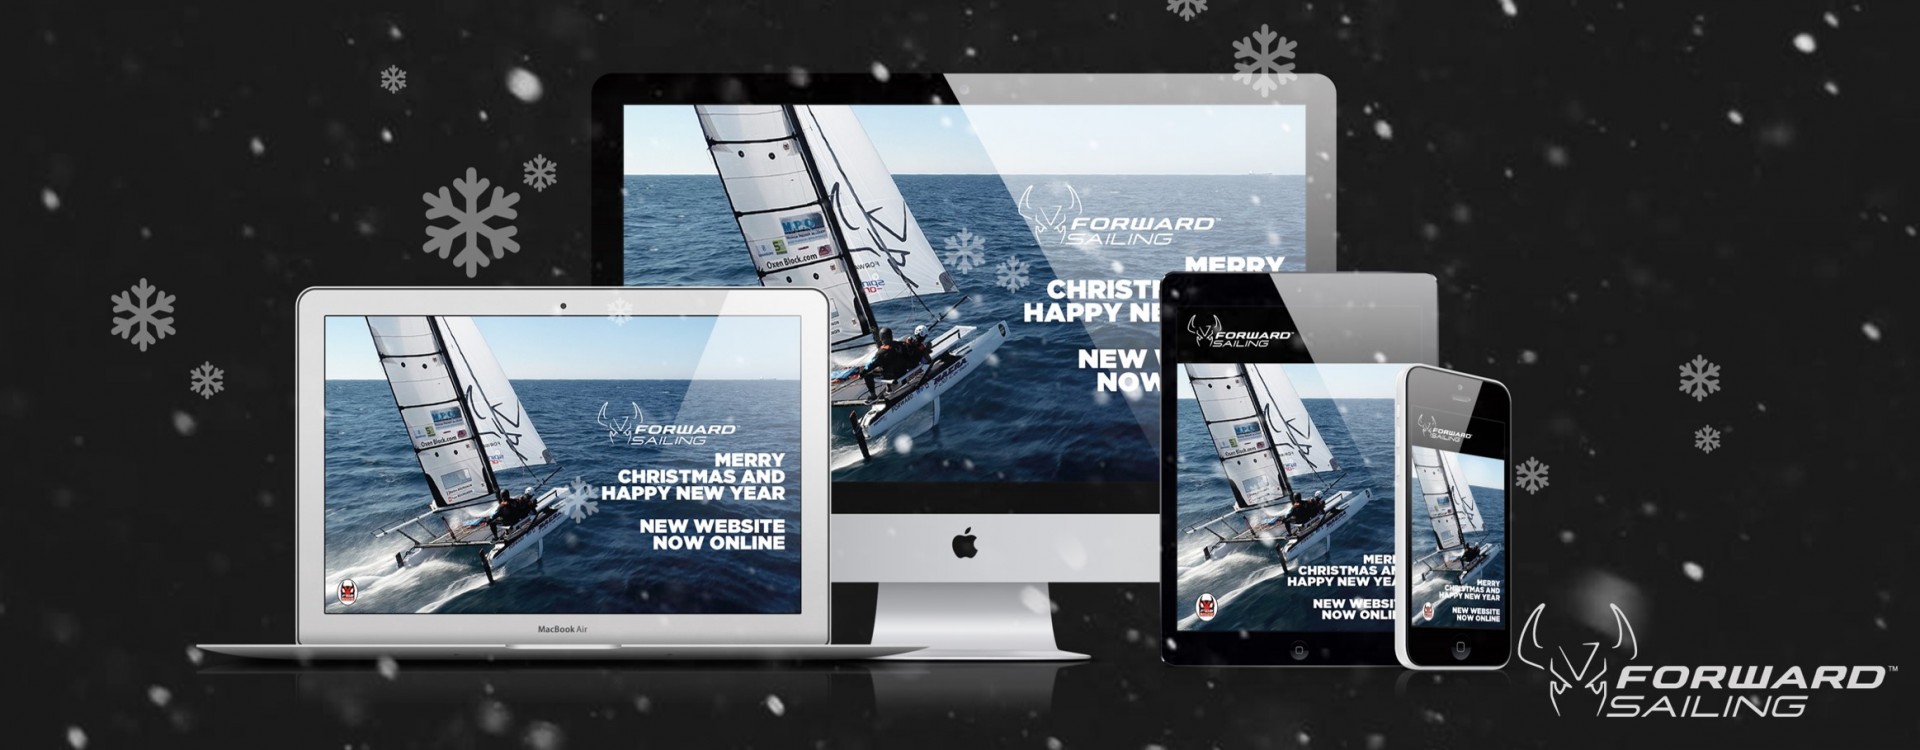 Nouveau site web de Forward Sailing